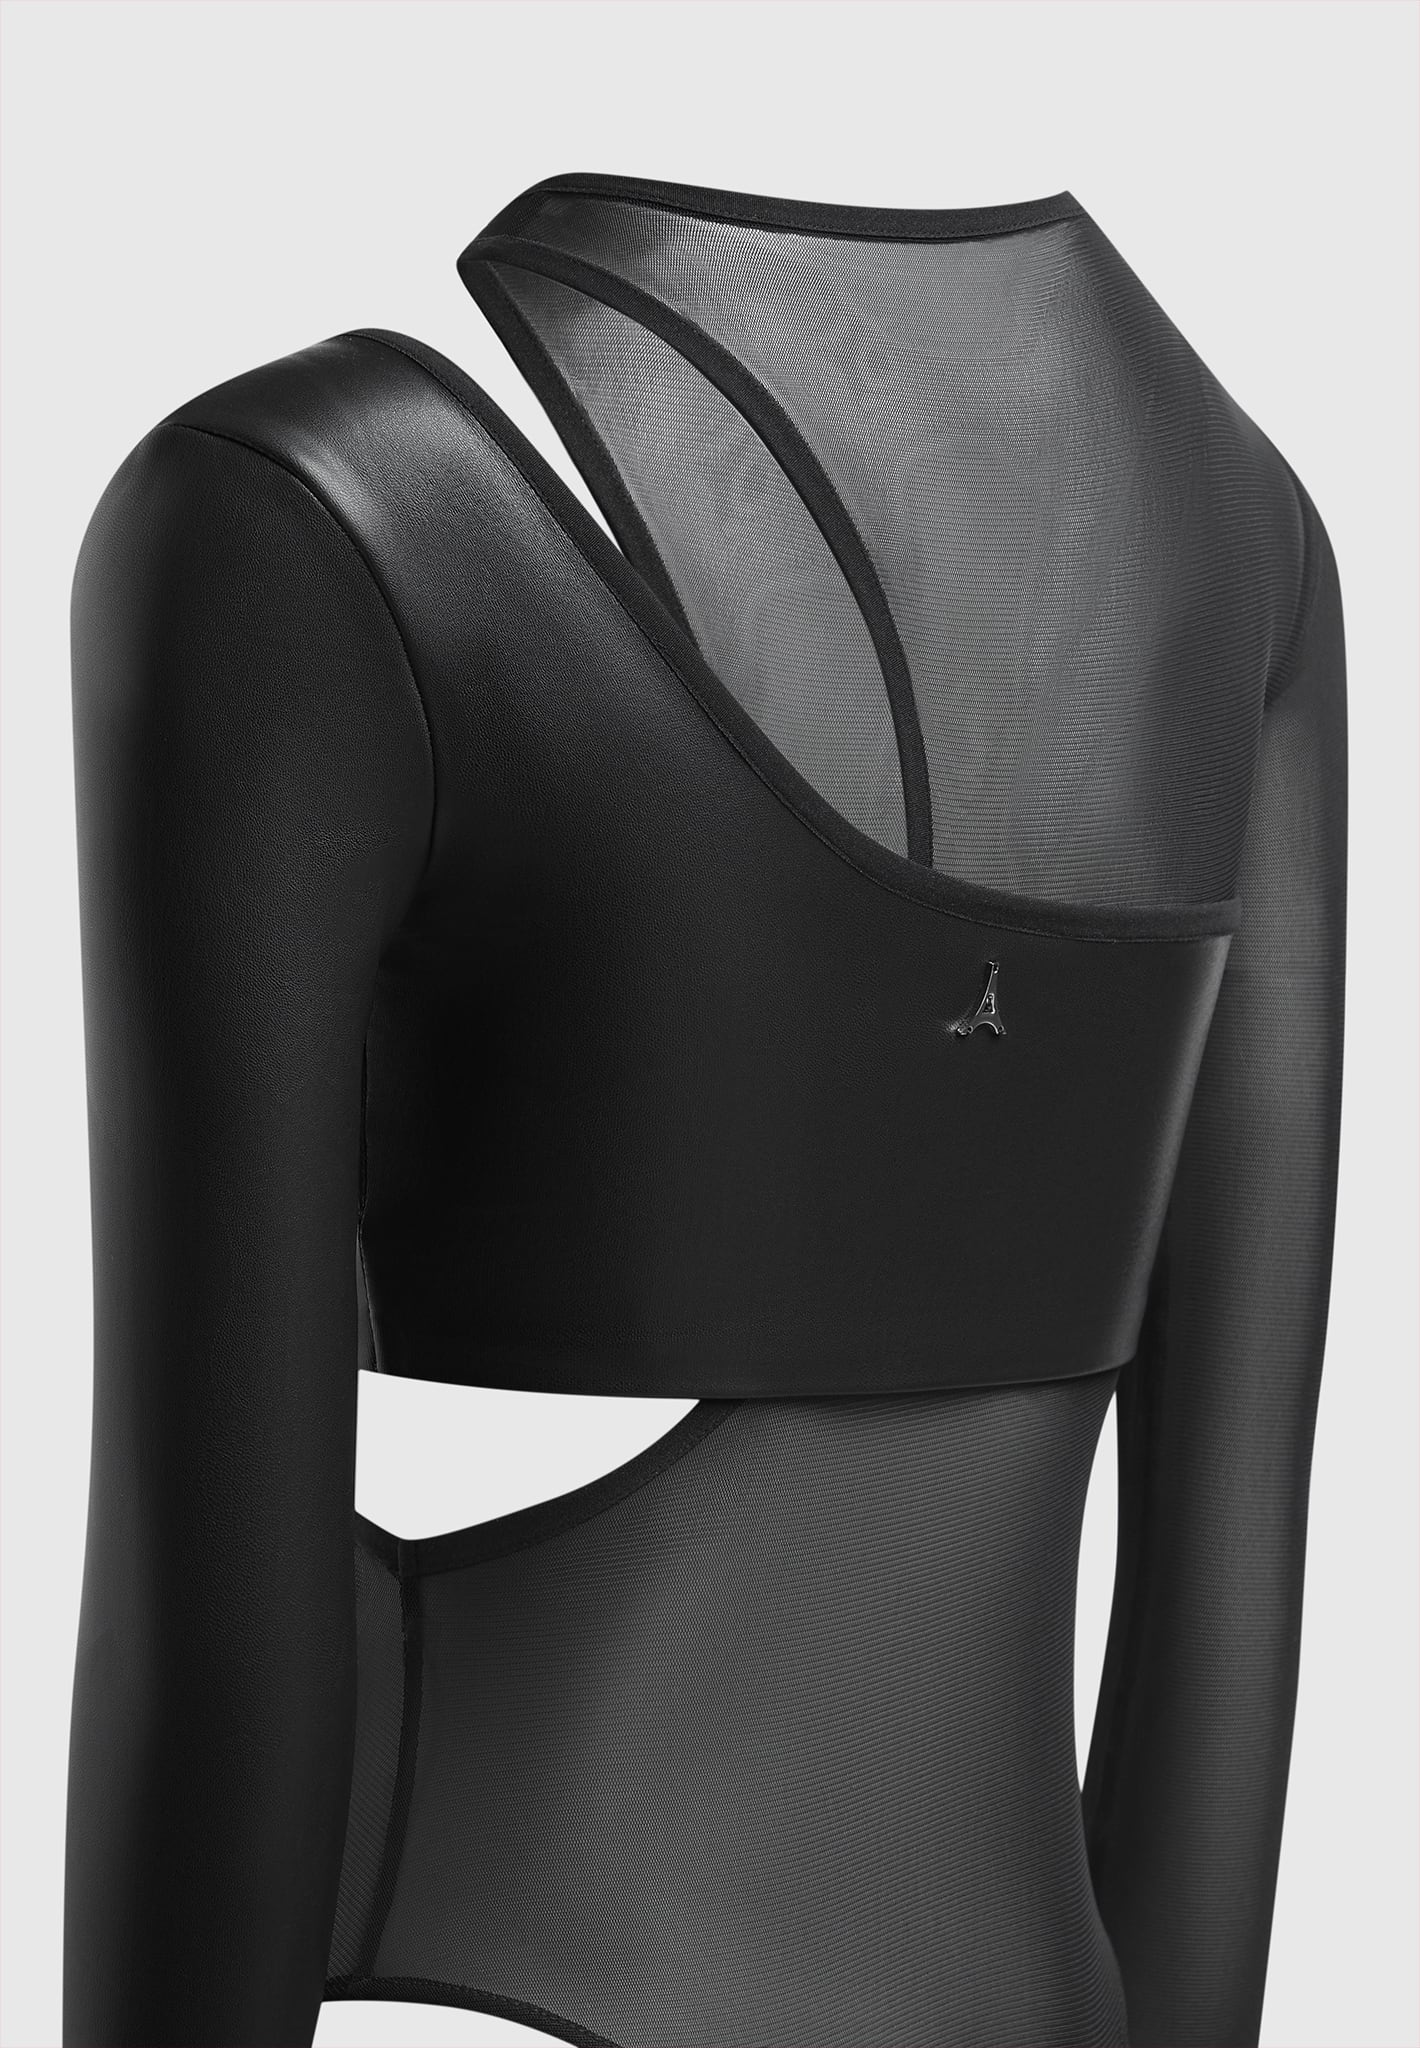 vegan-leather-overlay-mesh-bodysuit-black